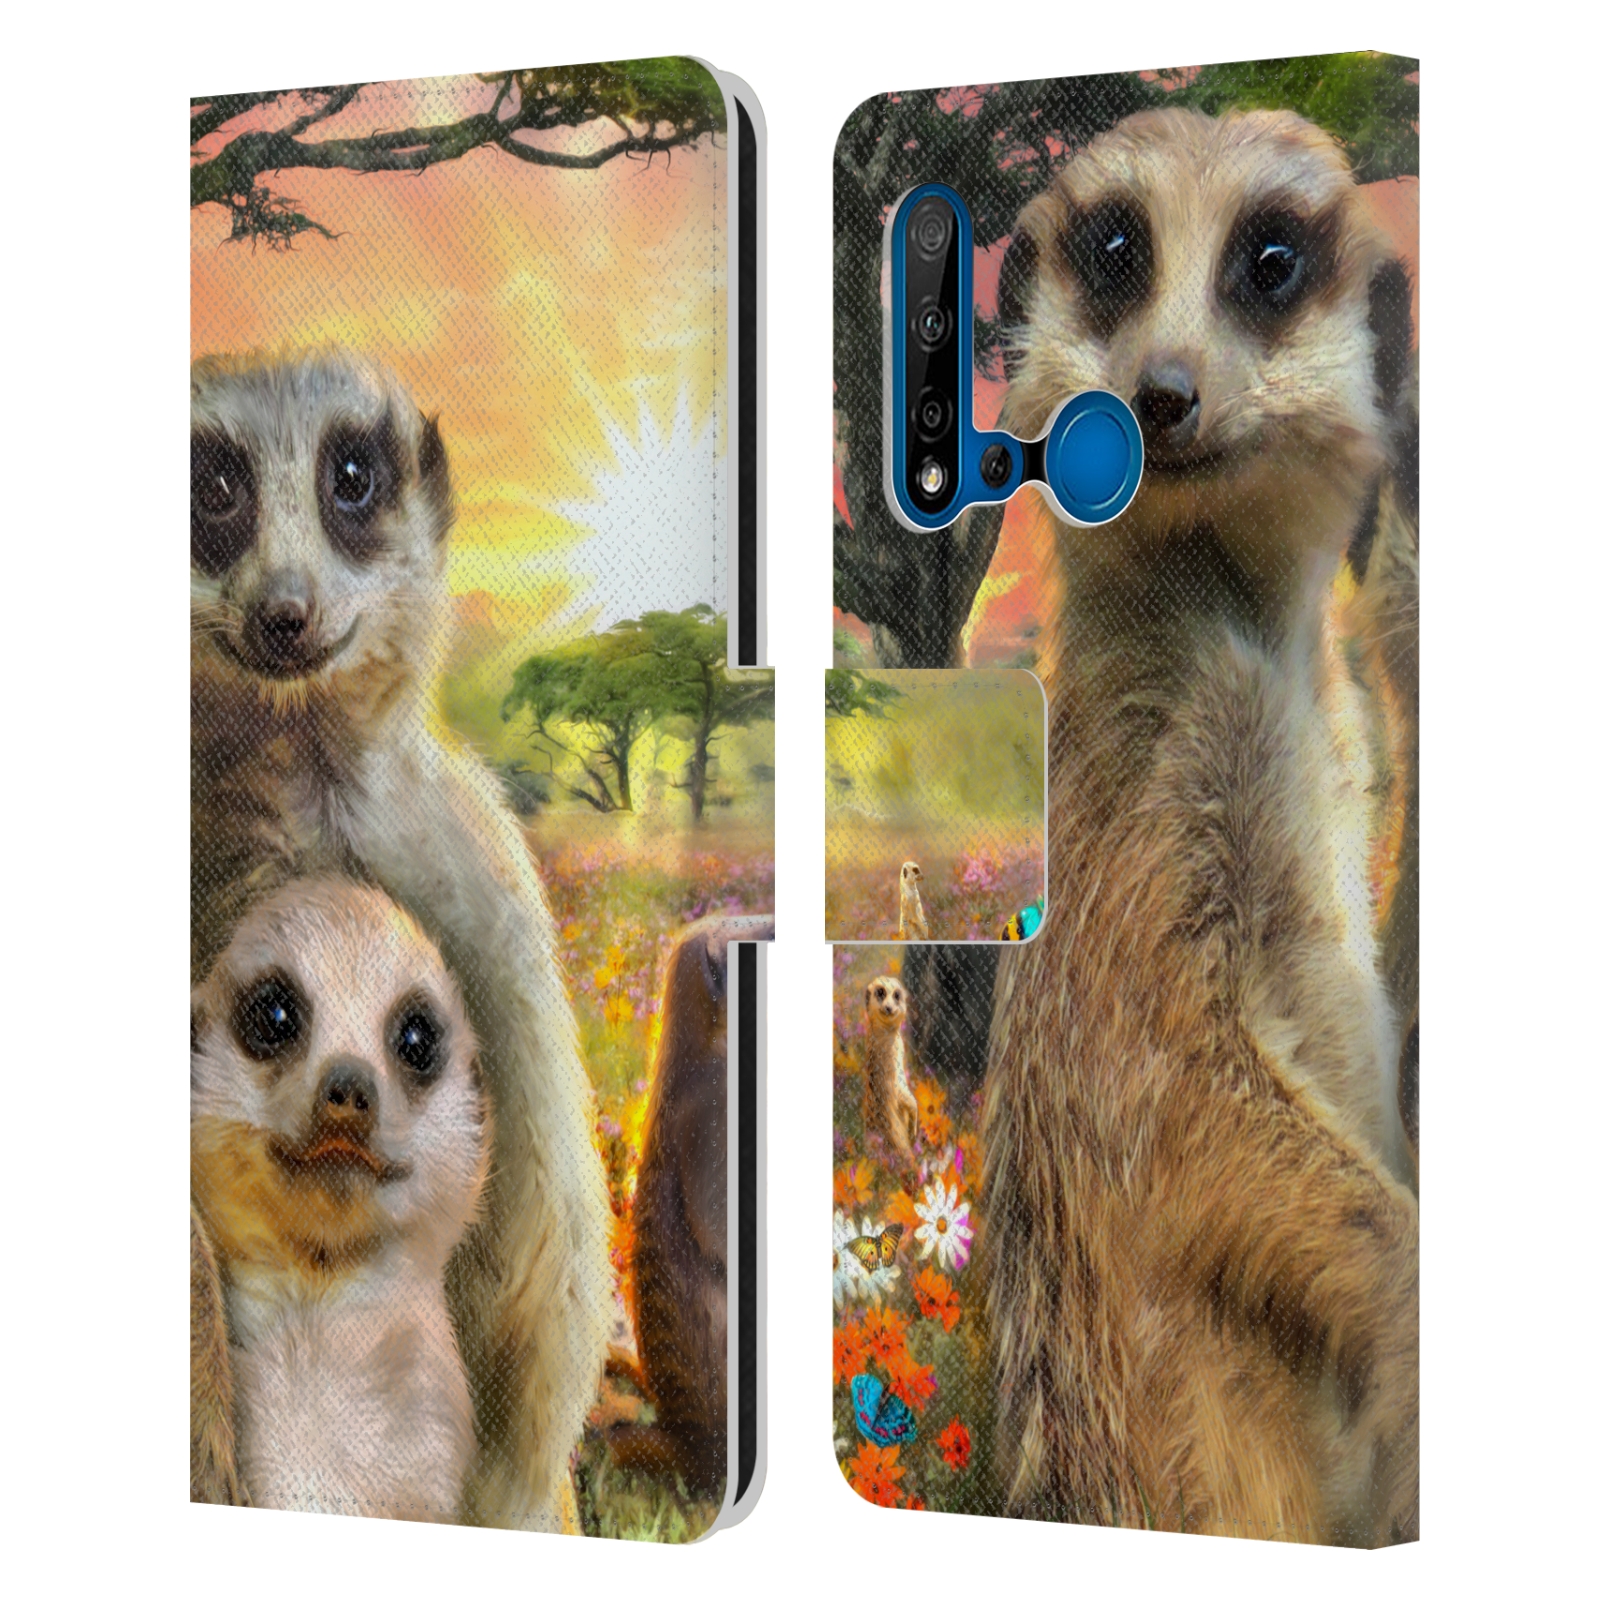 Pouzdro na mobil Huawei P20 LITE 2019 - Head Case - malé surikaty